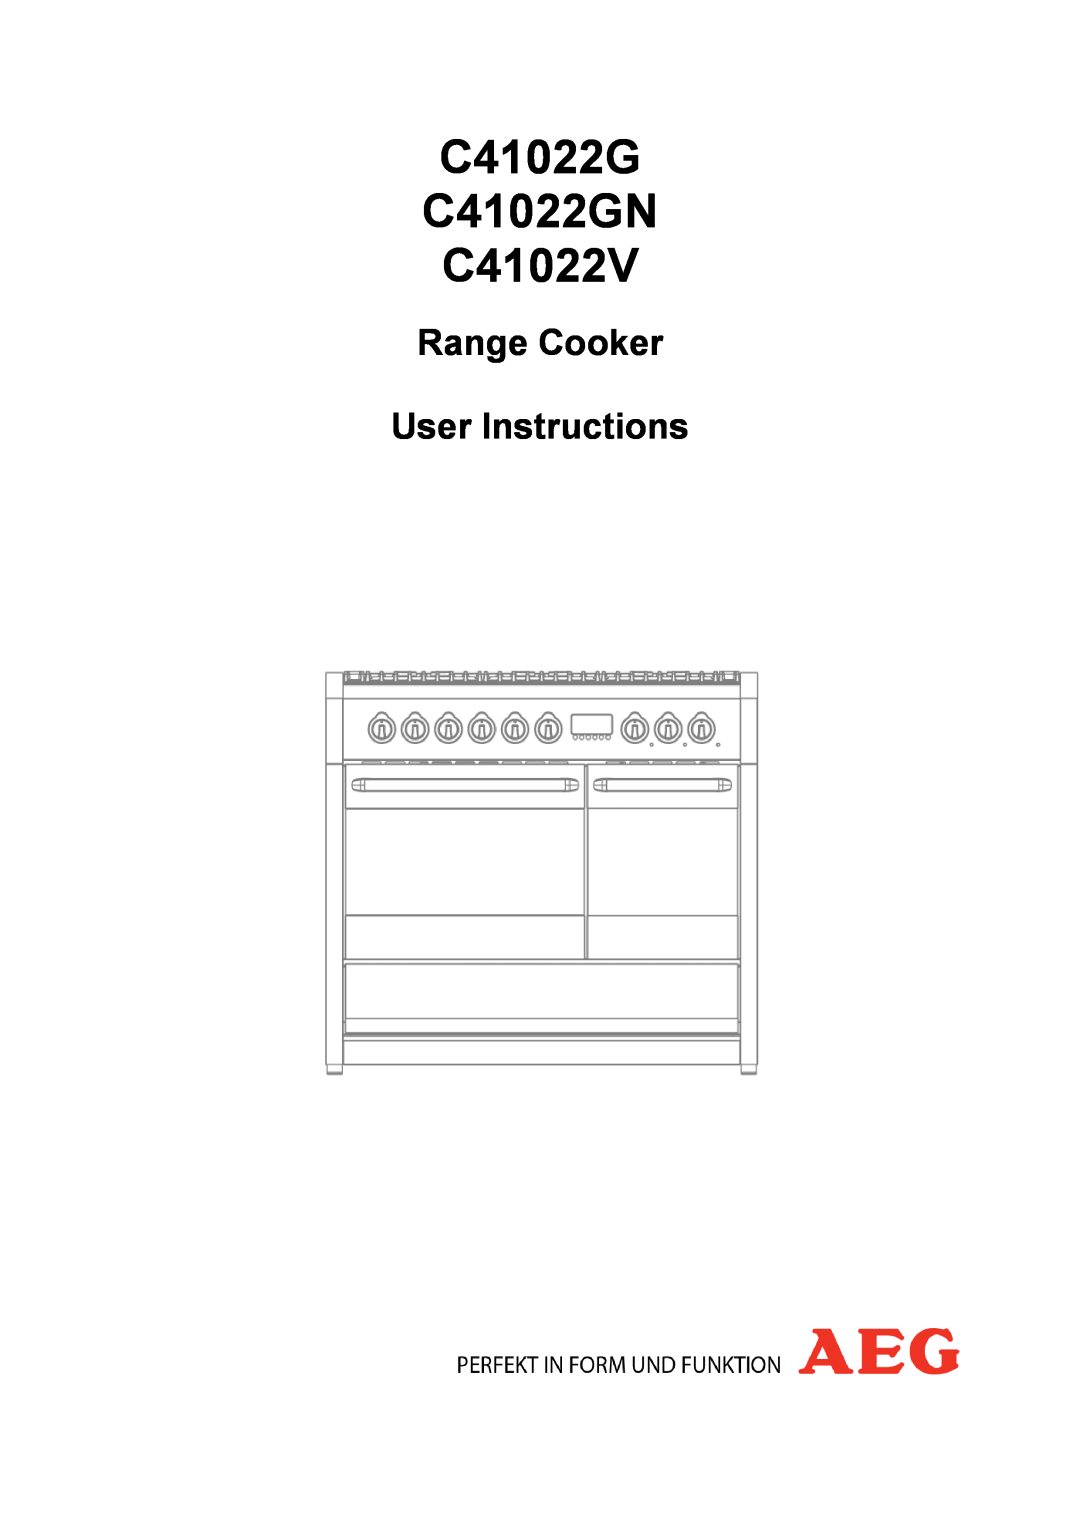 AEG manual C41022G C41022GN C41022V, Range Cooker User Instructions 